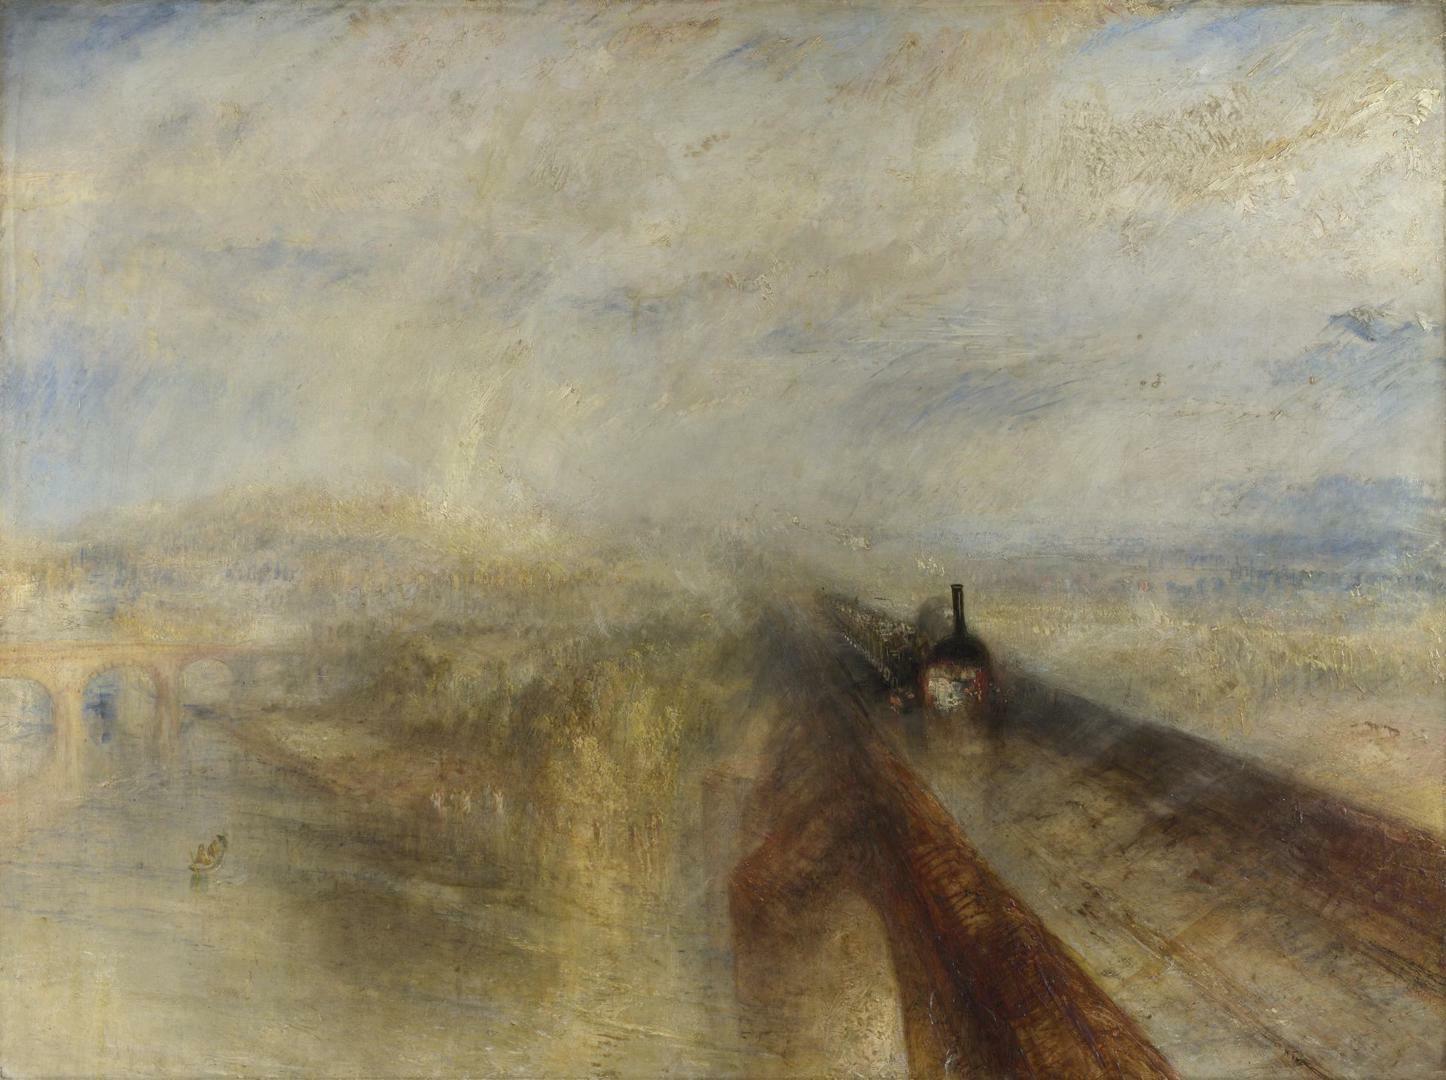 ジョゼフ・マロード・ウィリアム・ターナー《雨、蒸気、速度―グレート・ウェスタン鉄道》、1844年、ナショナル・ギャラリー、ロンドン